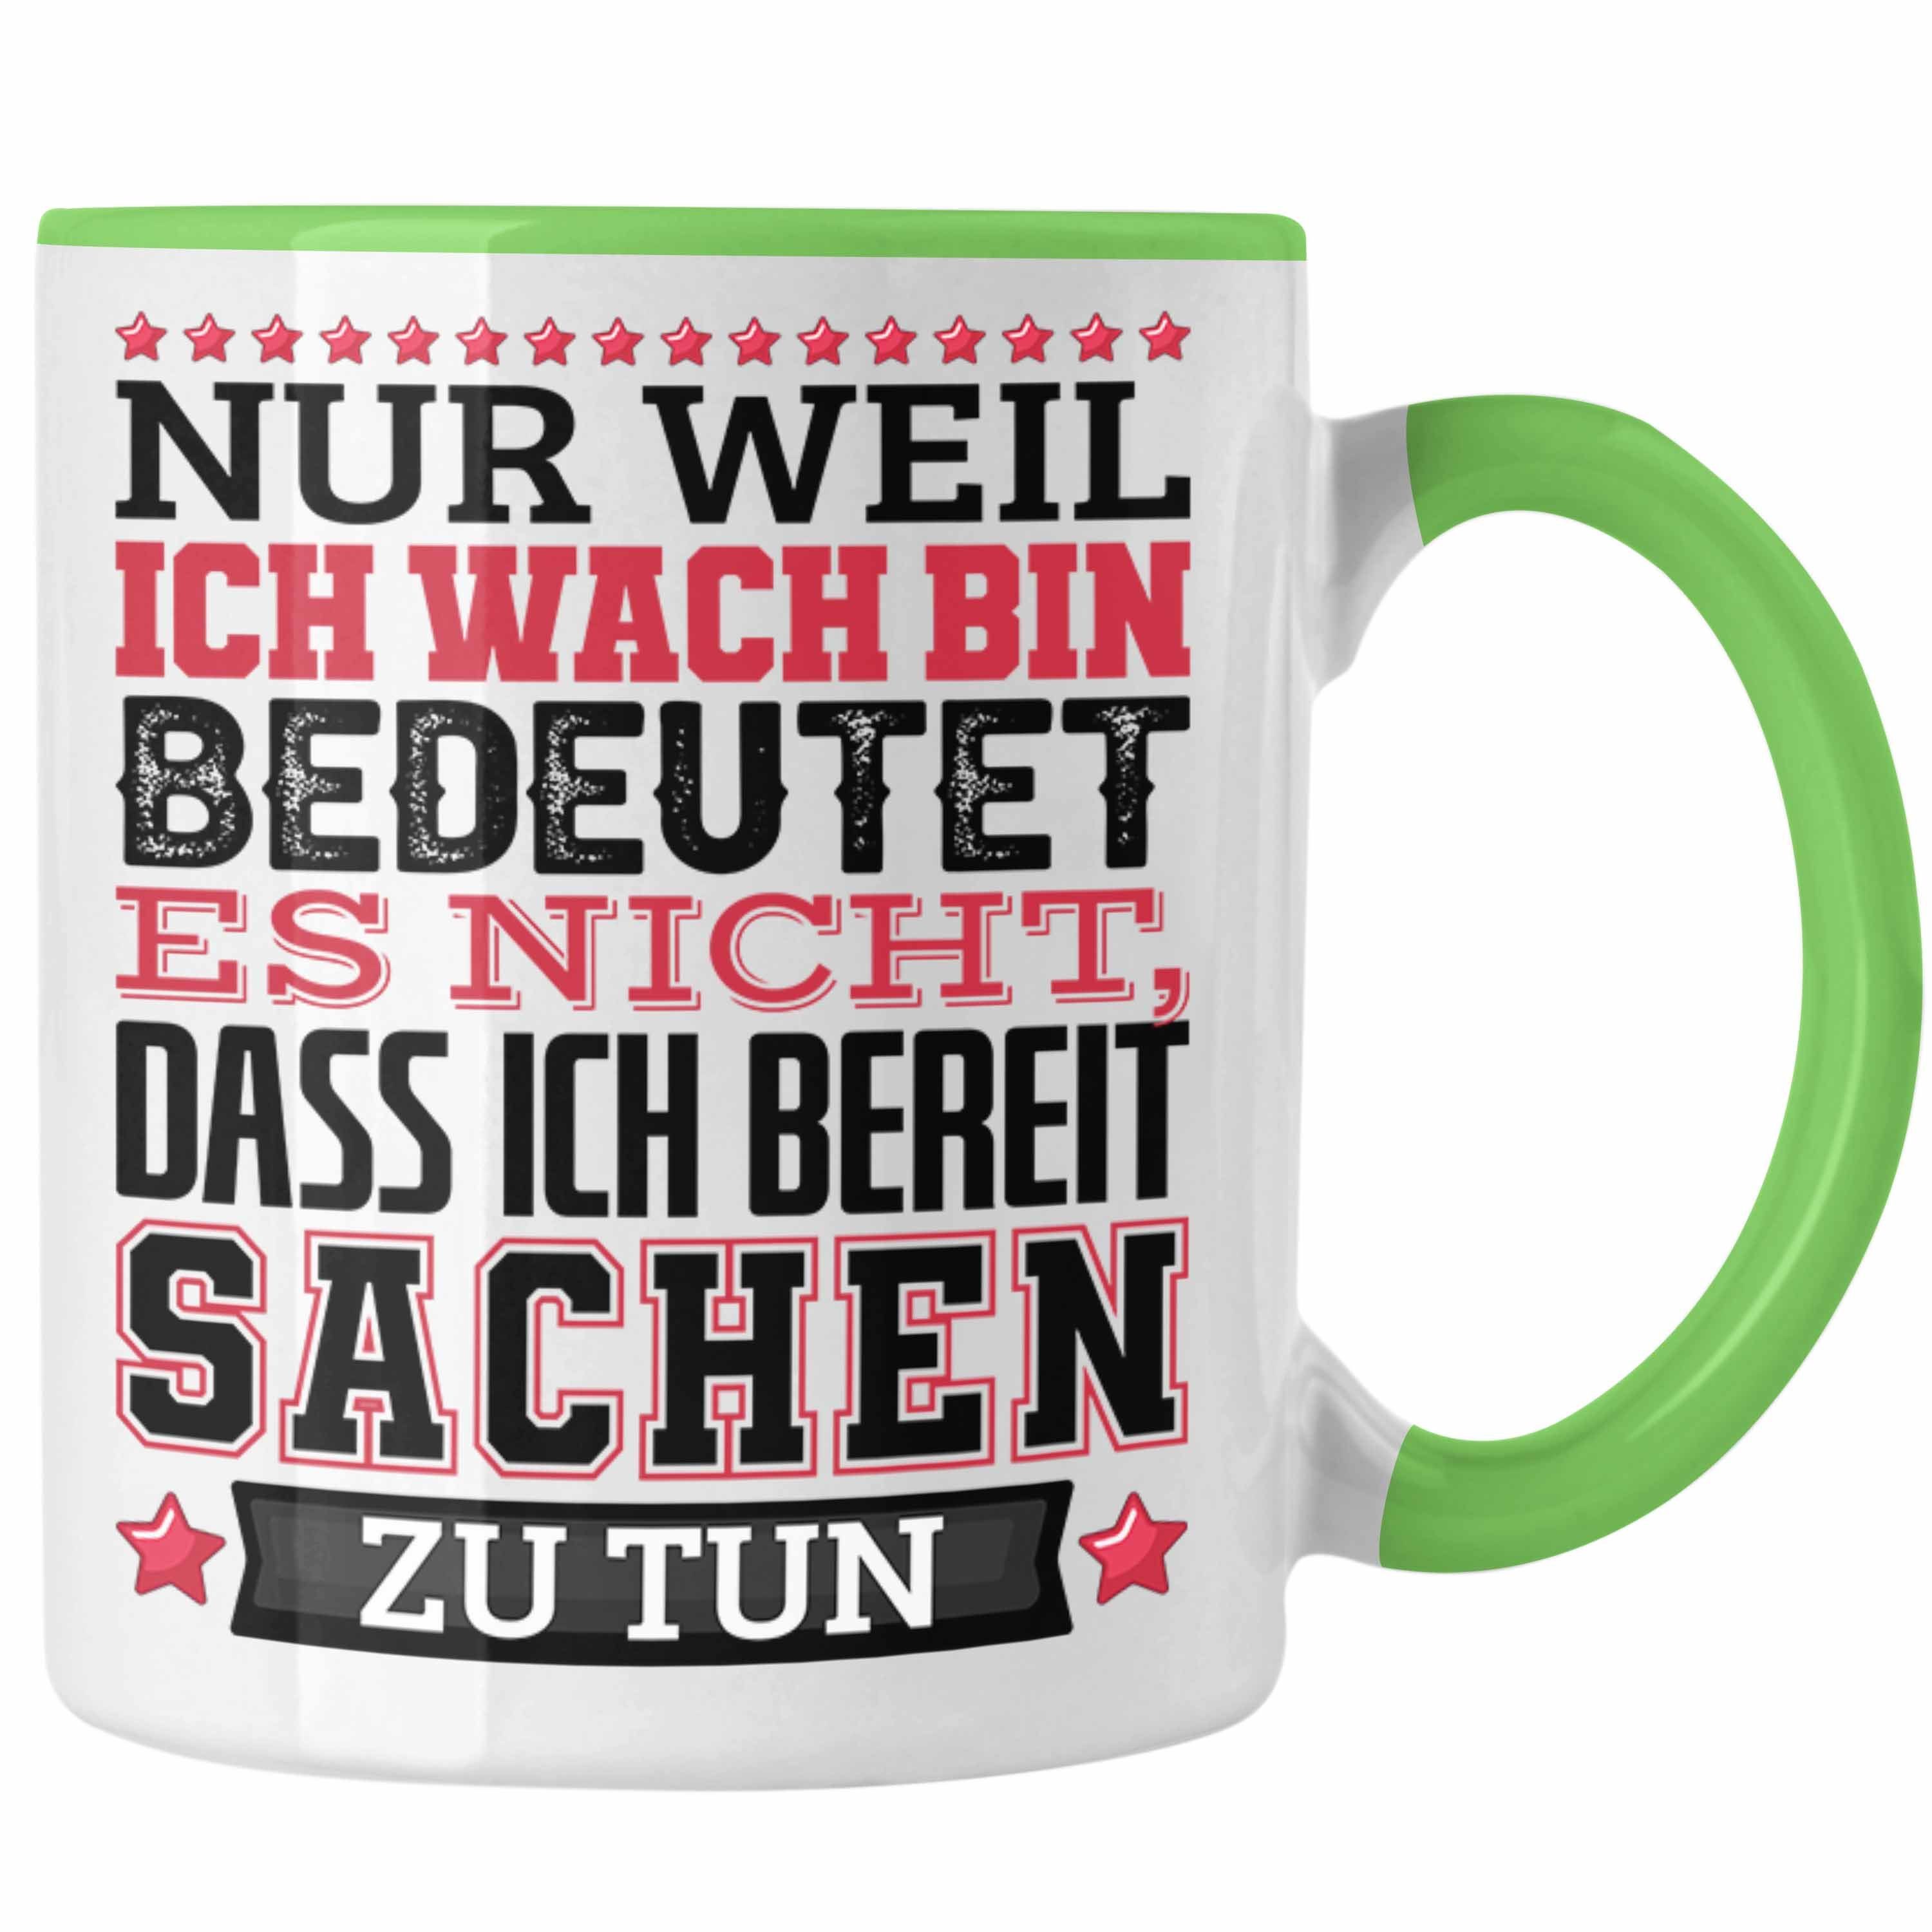 Trendation Tasse Heißt Weil Ich Kaffee-Becher Nic Es Bin Spruch Wach Grün Tasse Nur Lustiger